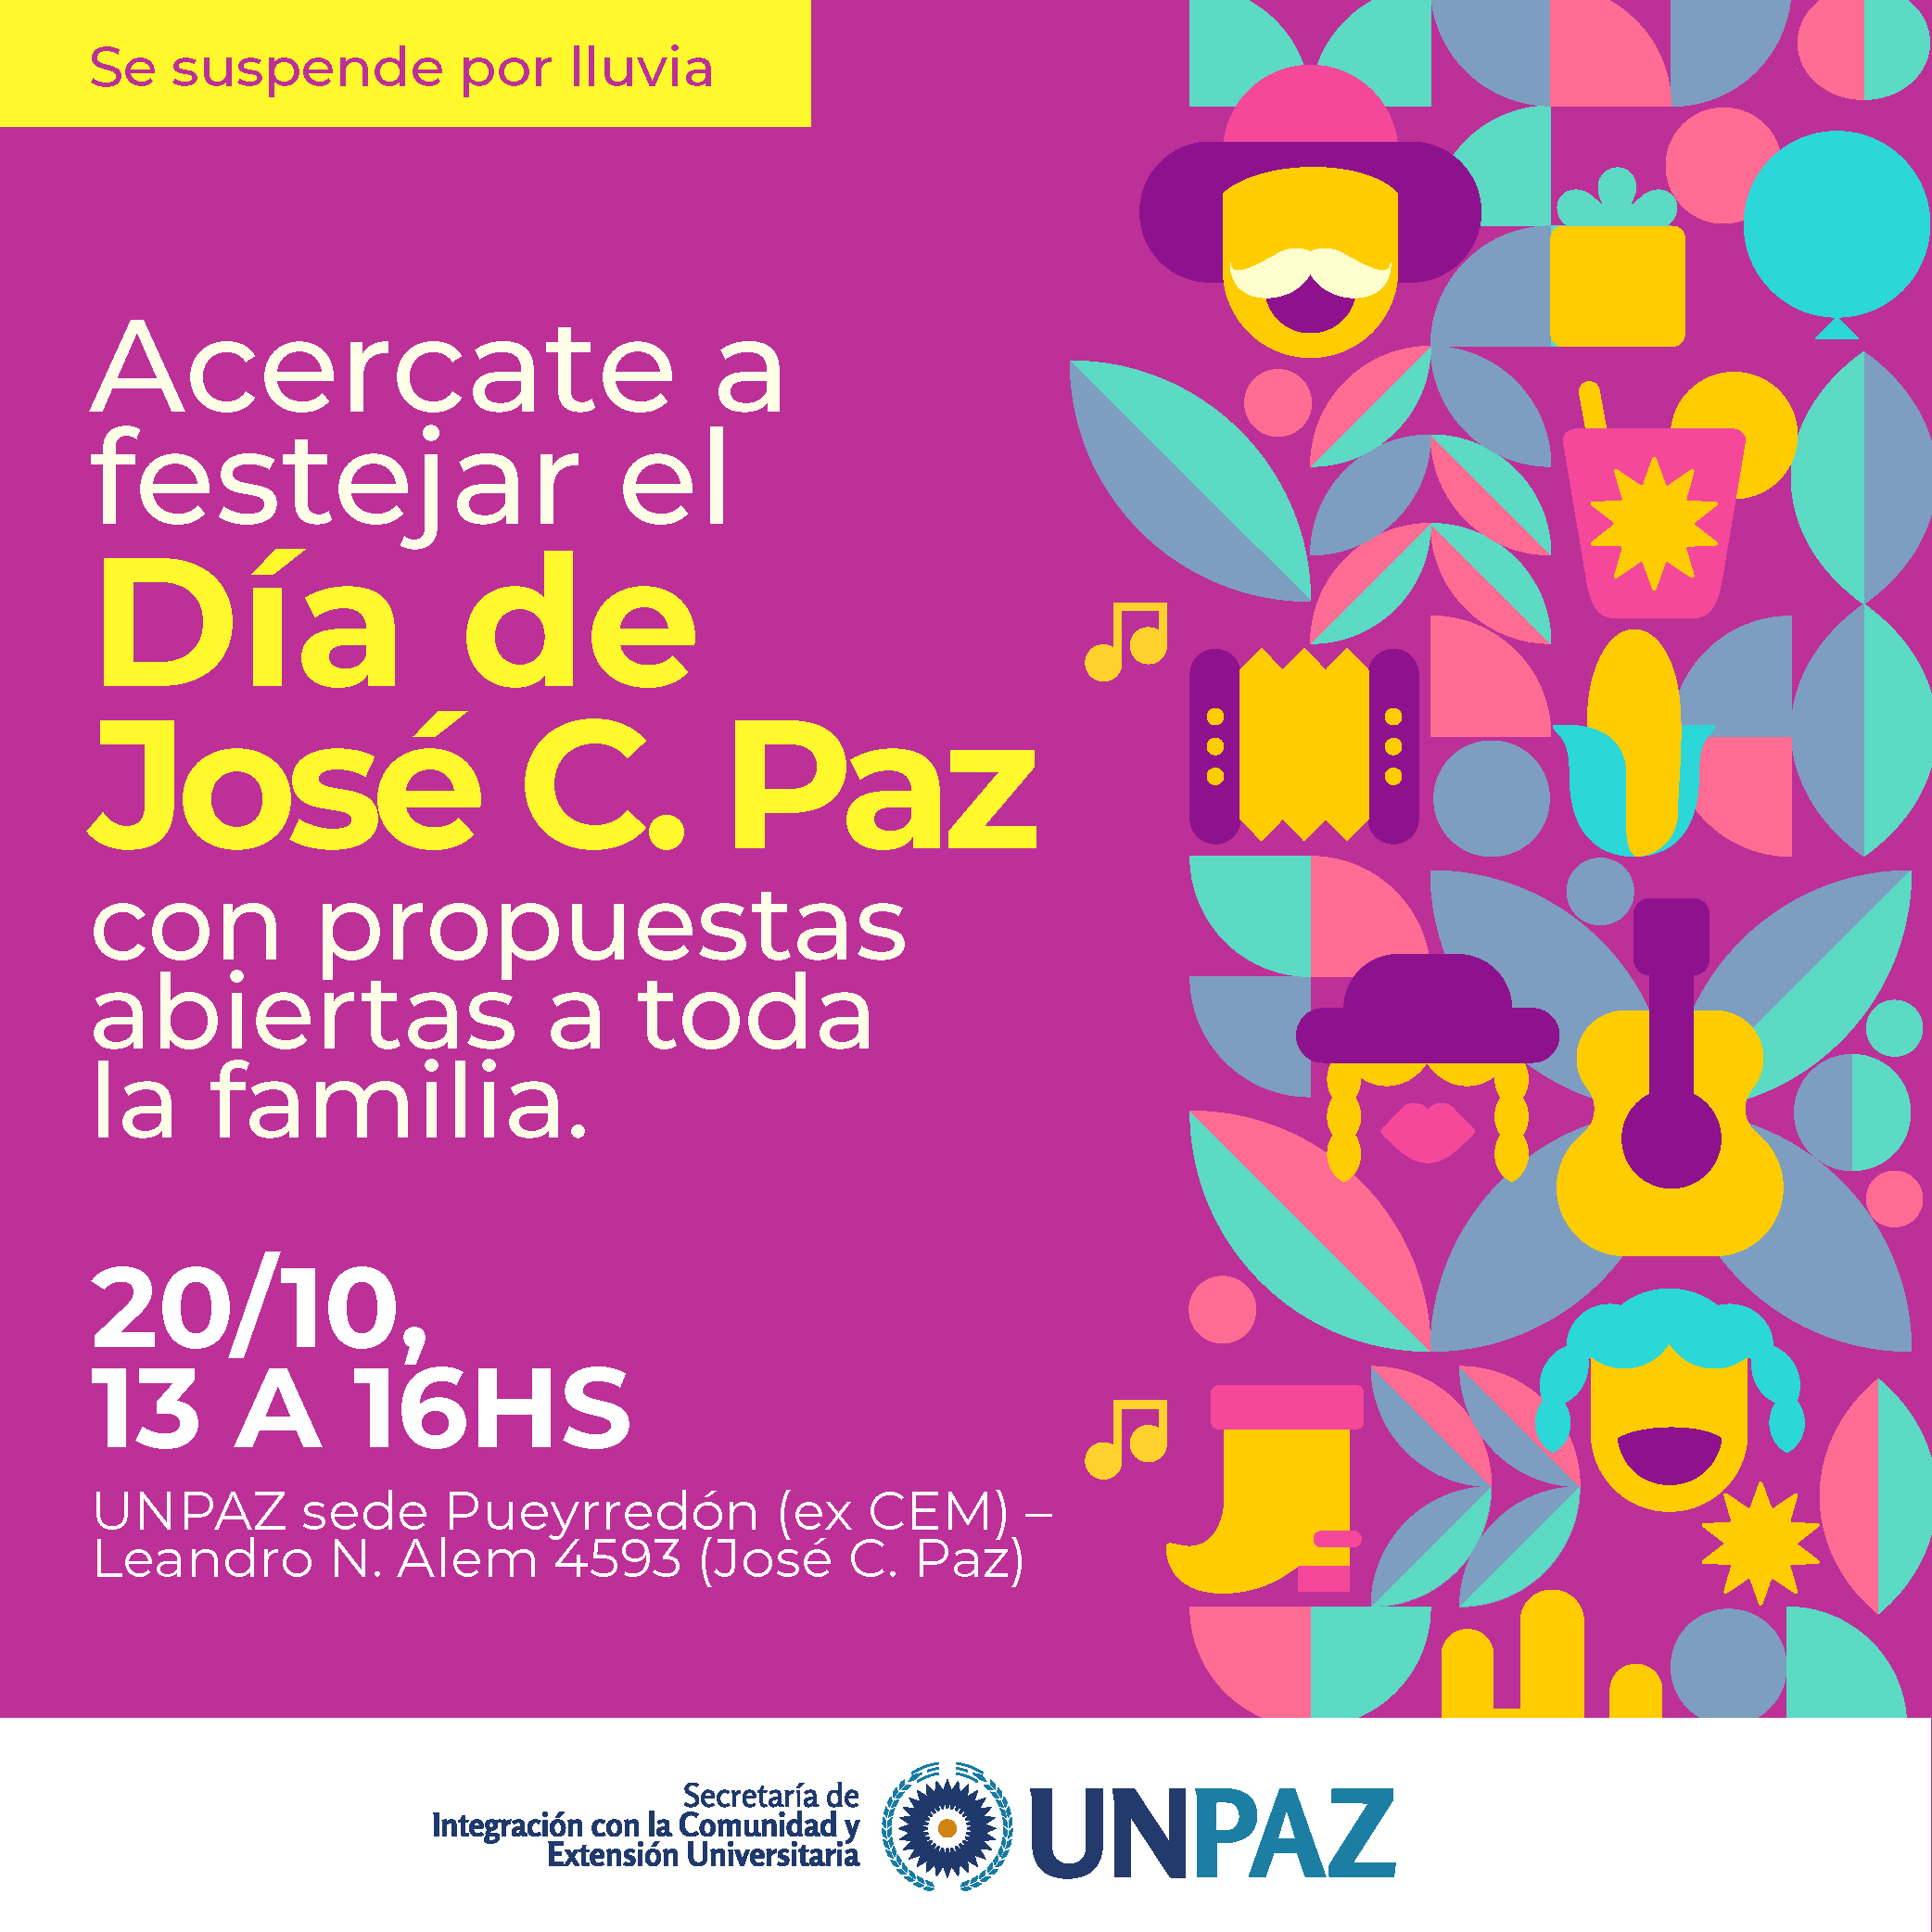 La UNPAZ realizará un festejo por el Día de José C. Paz